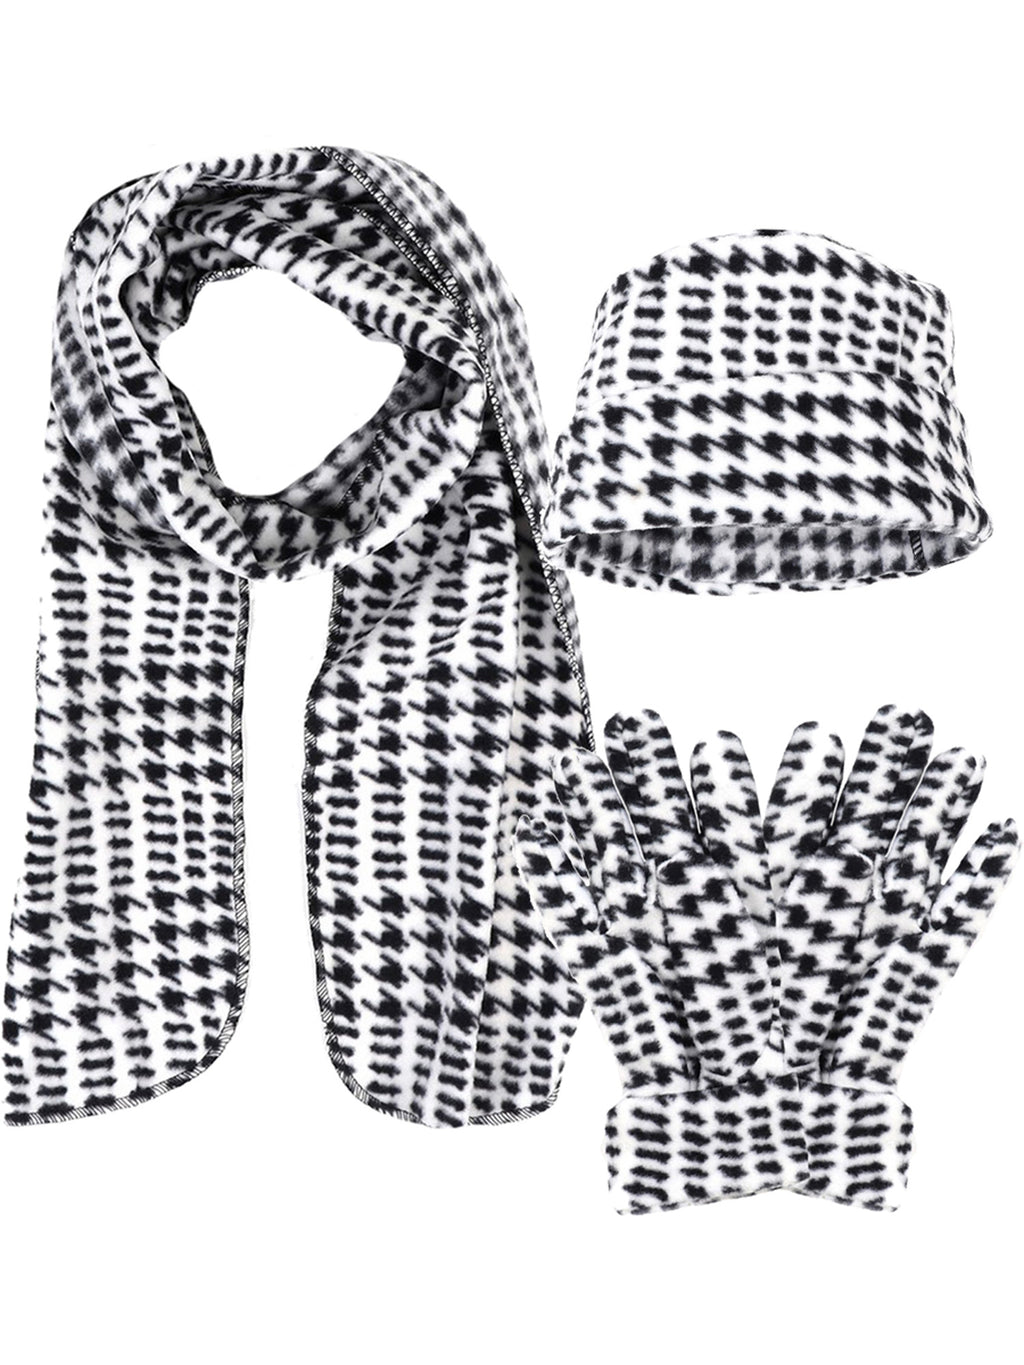 Black & White Houndstooth Fleece 3-Piece Hat Scarf & Glove Matching Set